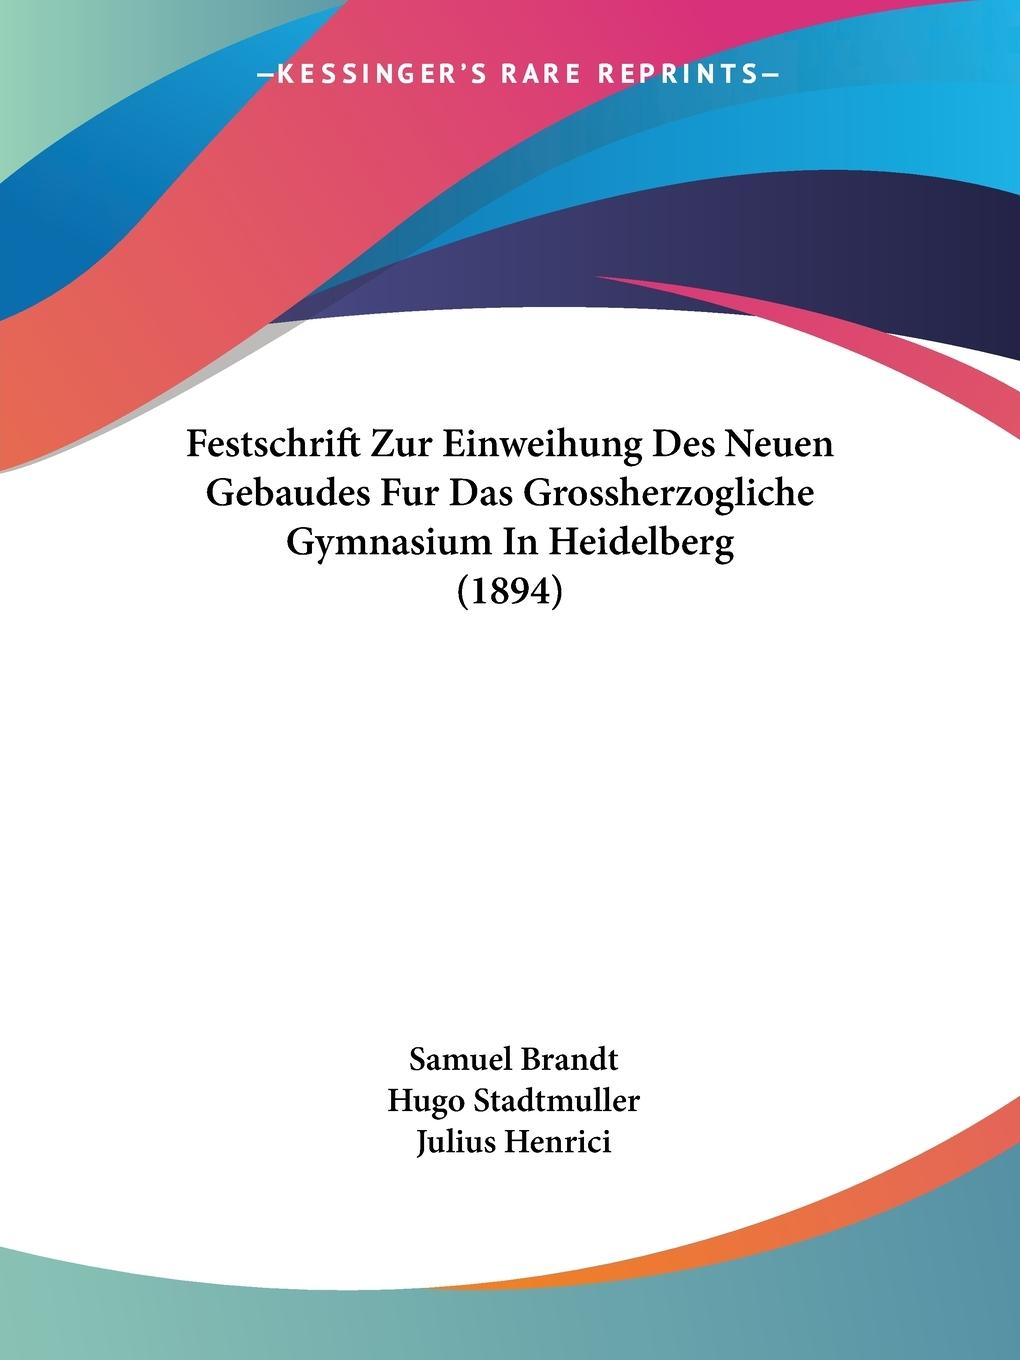 Festschrift Zur Einweihung Des Neuen Gebaudes Fur Das Grossherzogliche Gymnasium In Heidelberg (1894)